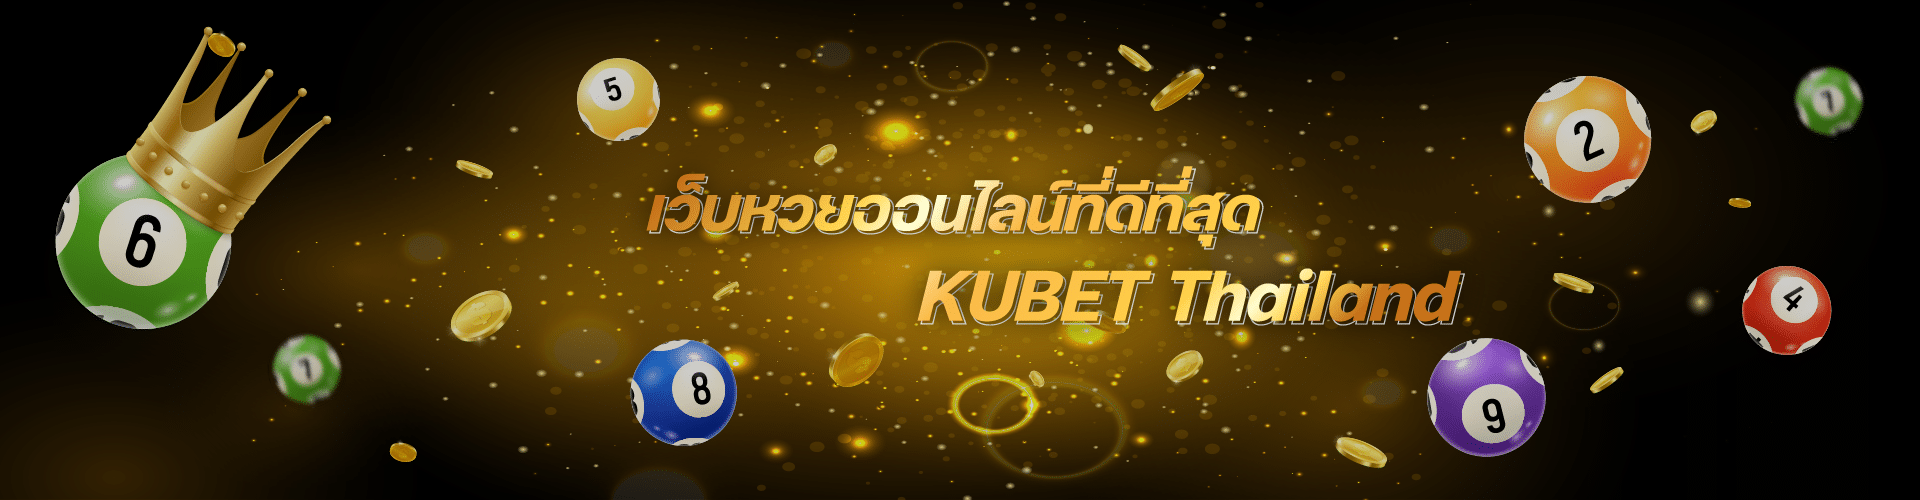 KUBET หวยออนไลน์อัตราจ่ายสูงสุดในไทย